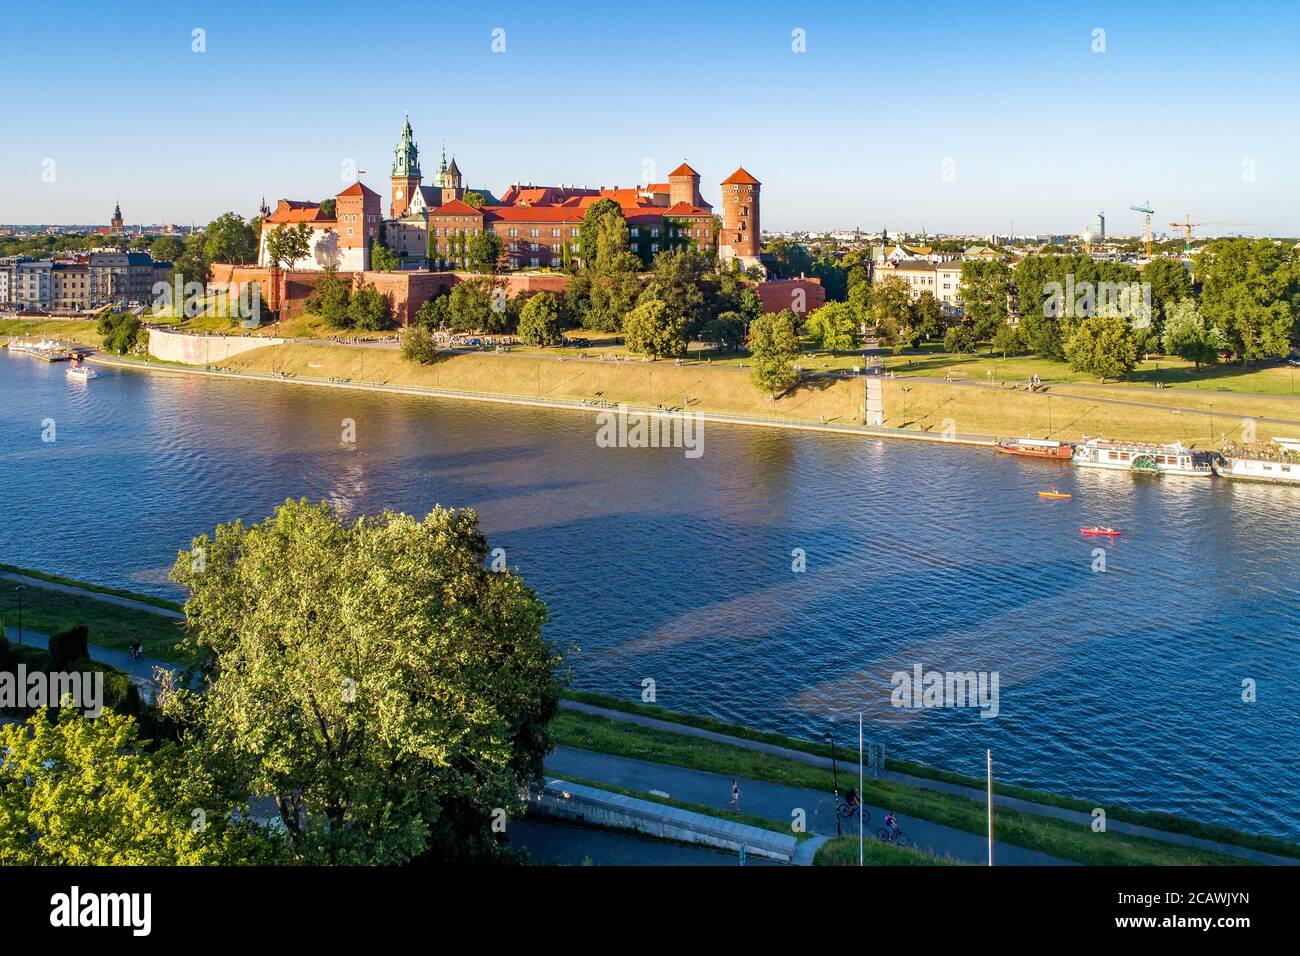 Königliche Wawel-Kathedrale und Schloss in Krakau, Polen. Luftaufnahme bei Sonnenuntergang. Weichsel, Touristenboote, Kanus, Flussufer mit Bäumen, Parks, p Stockfoto